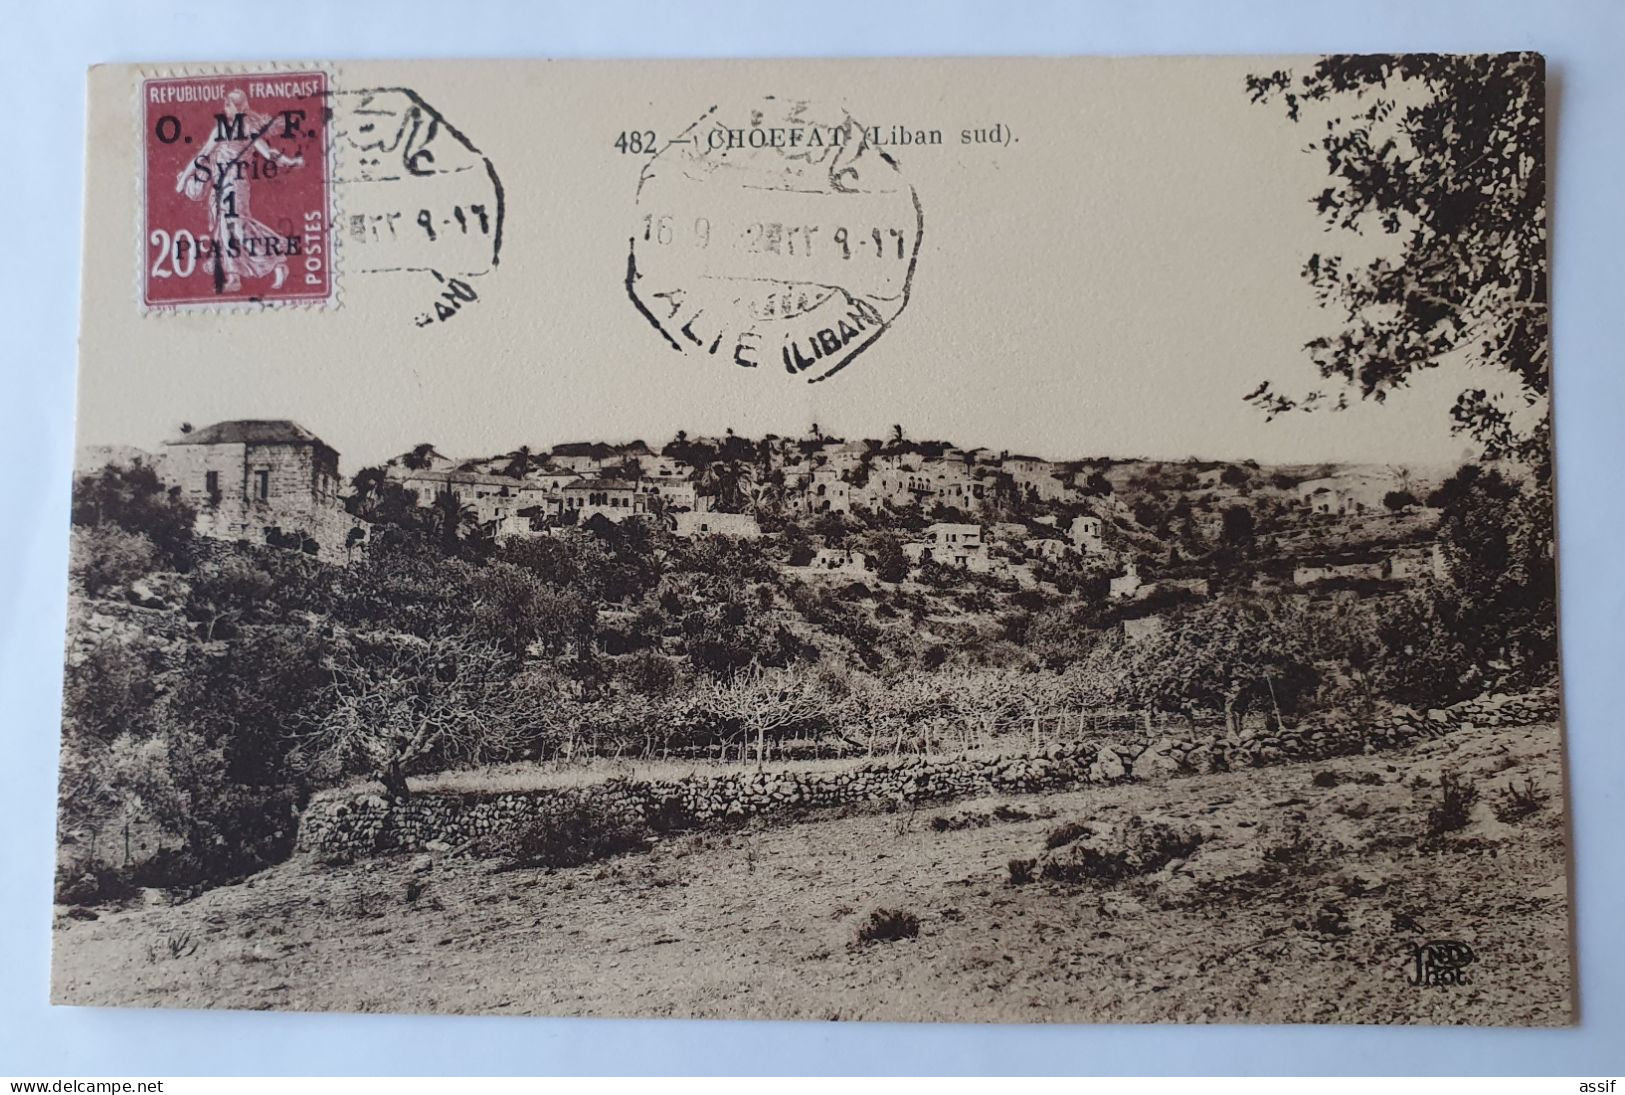 16 cpa cachet Alié Liban 16/09/1922 Syrie timbre semeuse